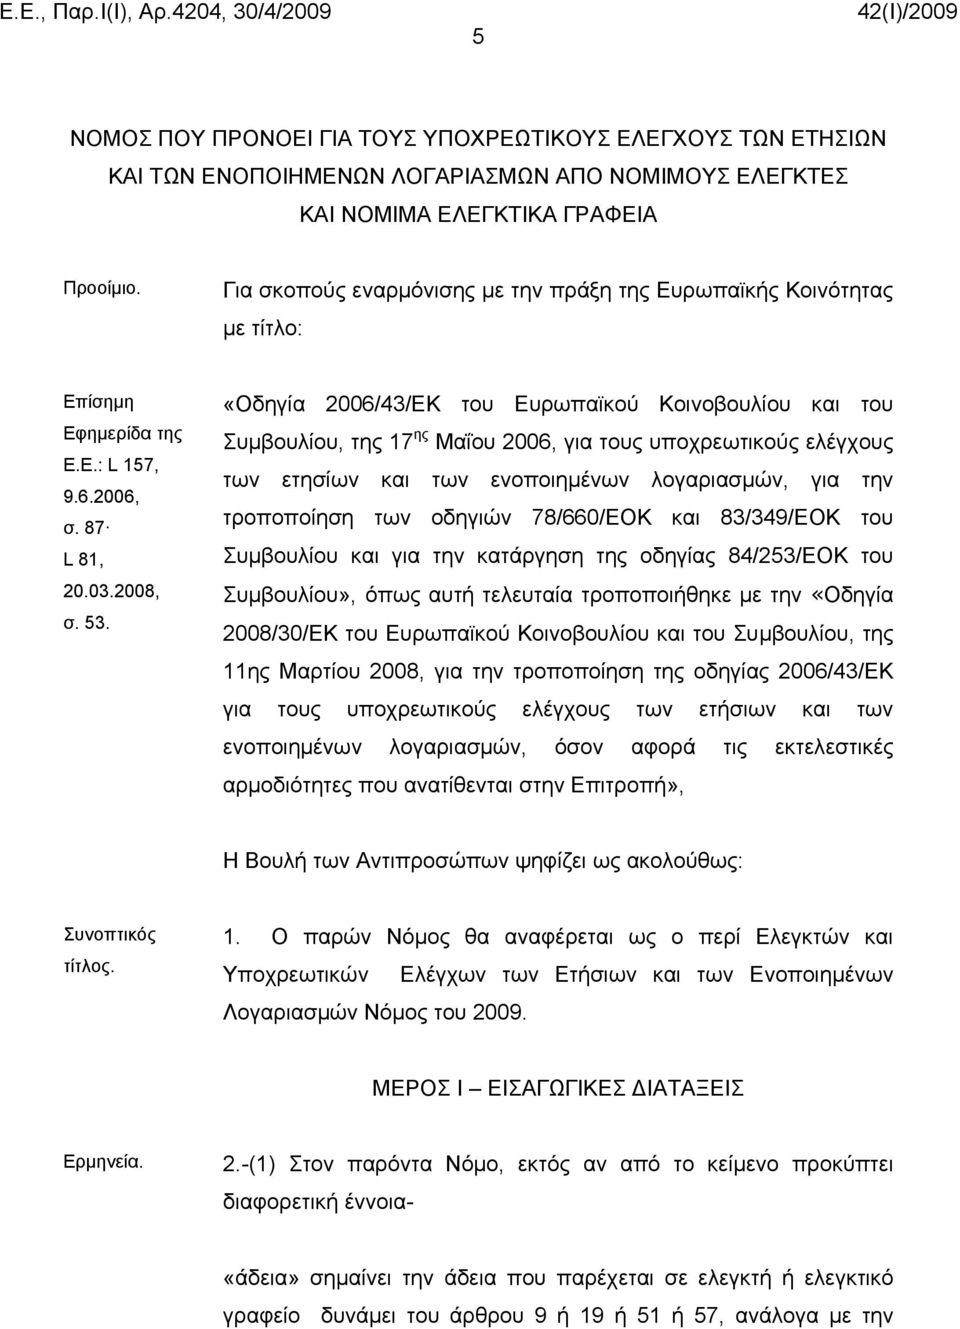 «Οδηγία 2006/43/ΕΚ του Ευρωπαϊκού Κοινοβουλίου και του Συμβουλίου, της 17 ης Μαΐου 2006, για τους υποχρεωτικούς ελέγχους των ετησίων και των ενοποιημένων λογαριασμών, για την τροποποίηση των οδηγιών